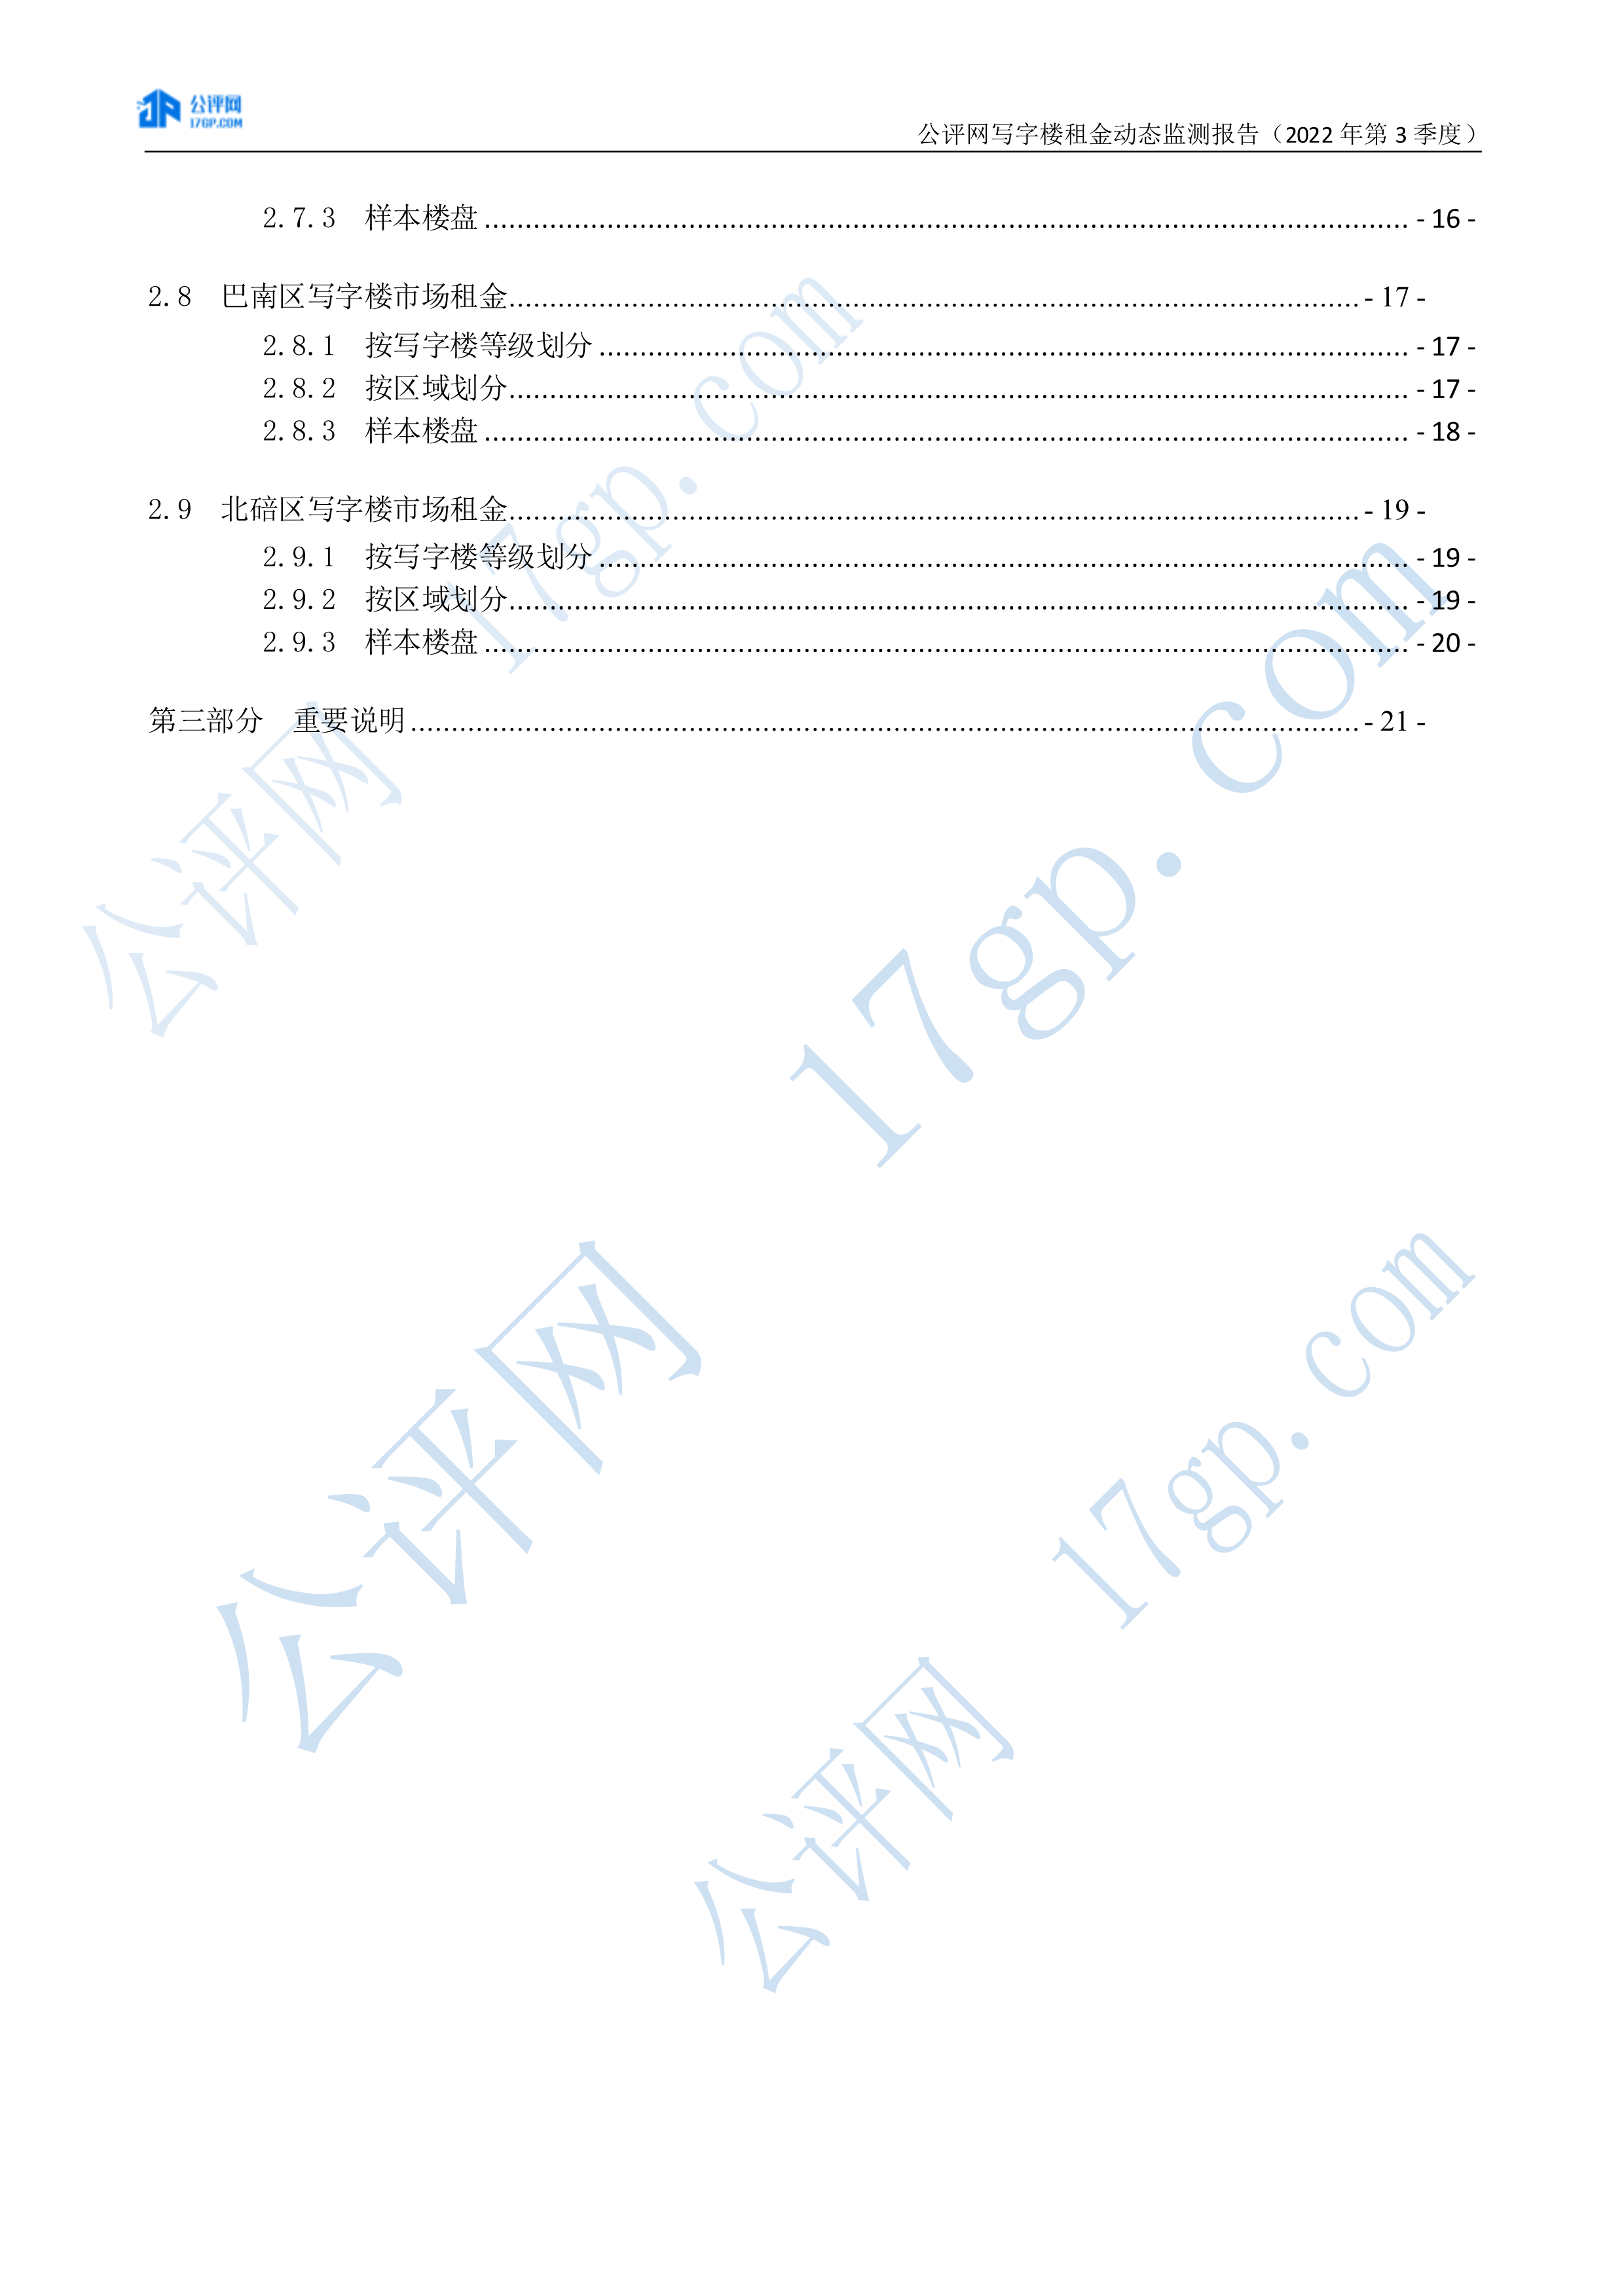 103012435816_02022年3季度-重庆中心城区写字楼市场租金动态监测报告-20221028(1)_3.Png